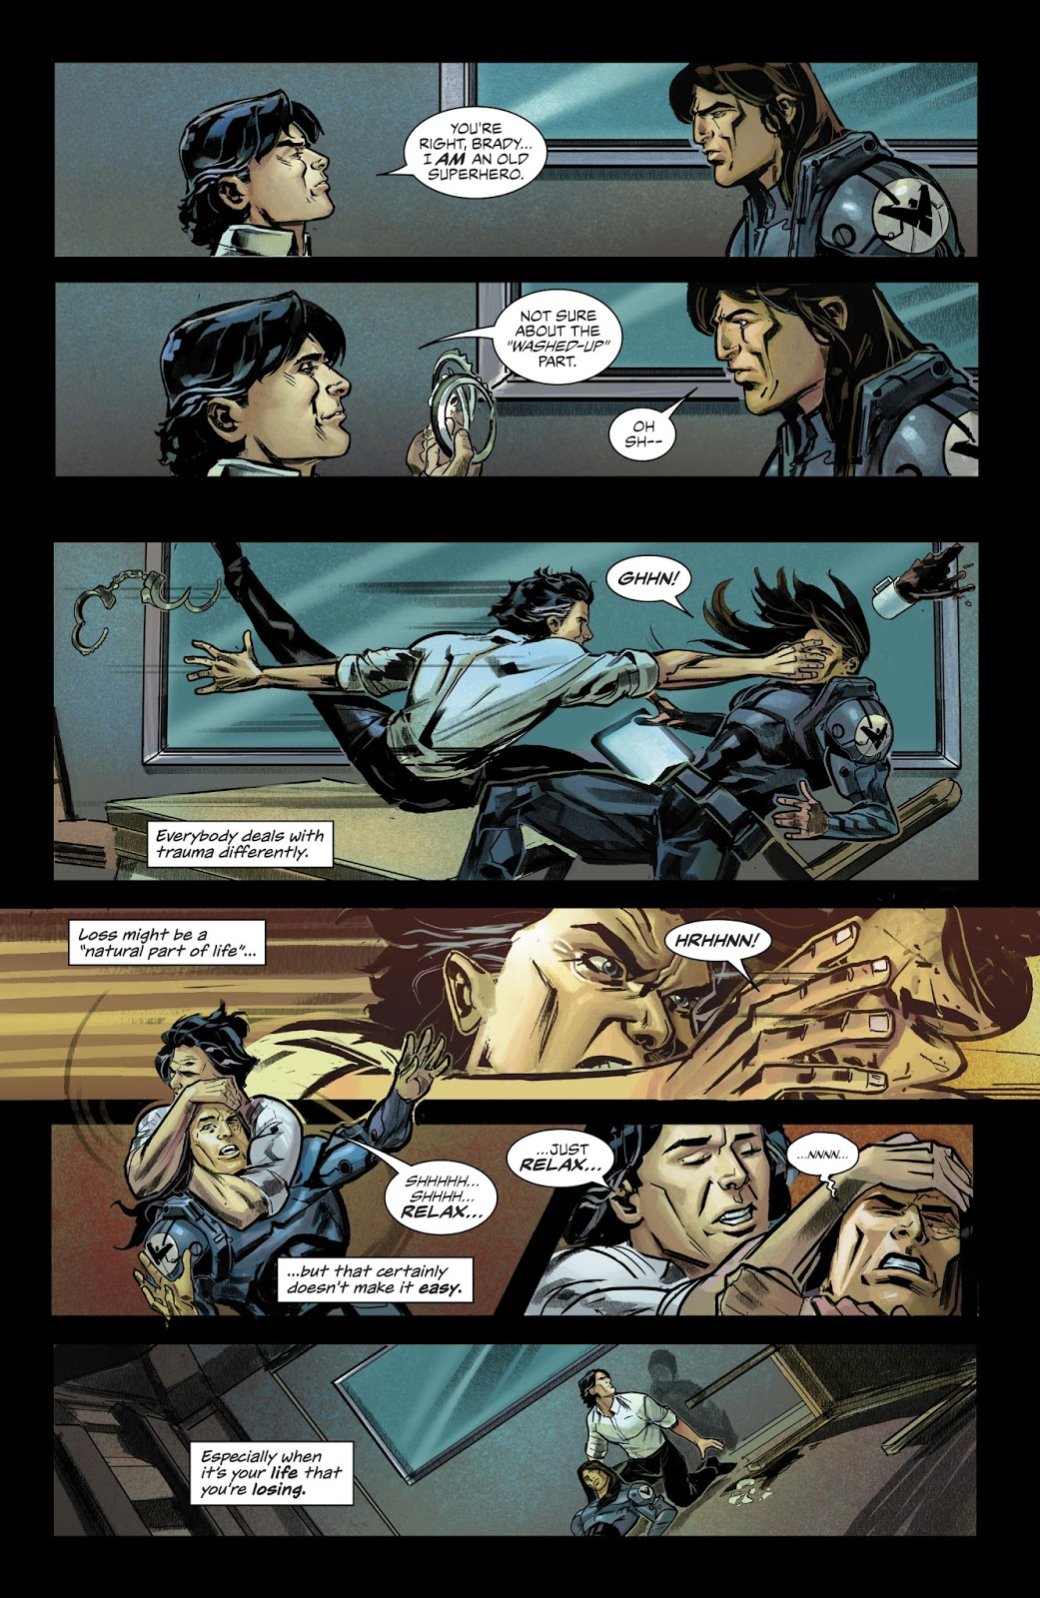 Галерея Nightwing: The New Order — комикс-антиутопия, где суперсилы вне закона - 2 фото